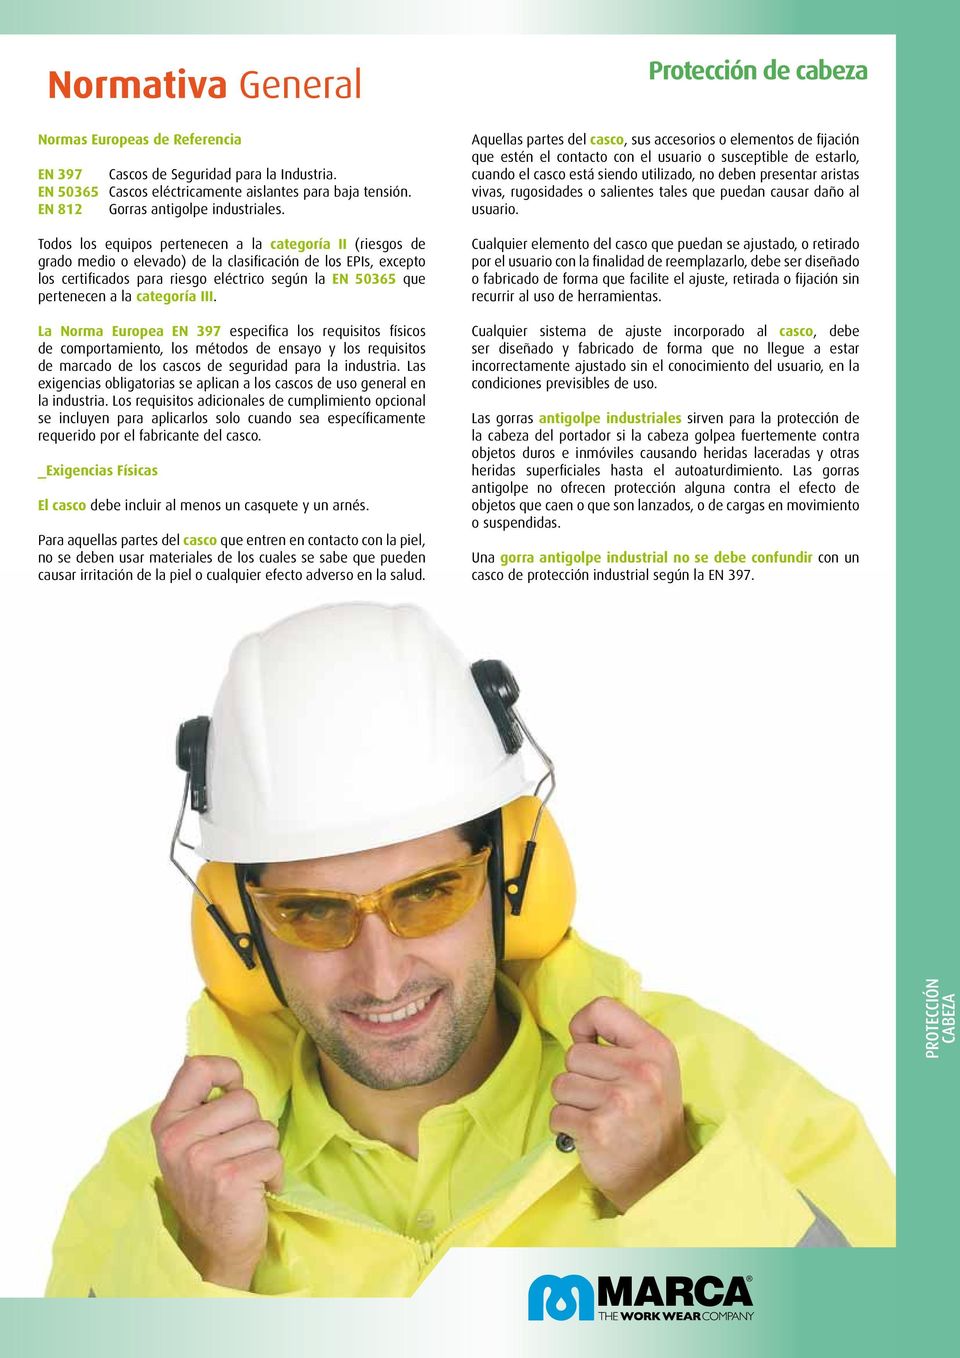 categoría III. La Norma Europea EN 397 especifica los requisitos físicos de comportamiento, los métodos de ensayo y los requisitos de marcado de los cascos de seguridad para la industria.